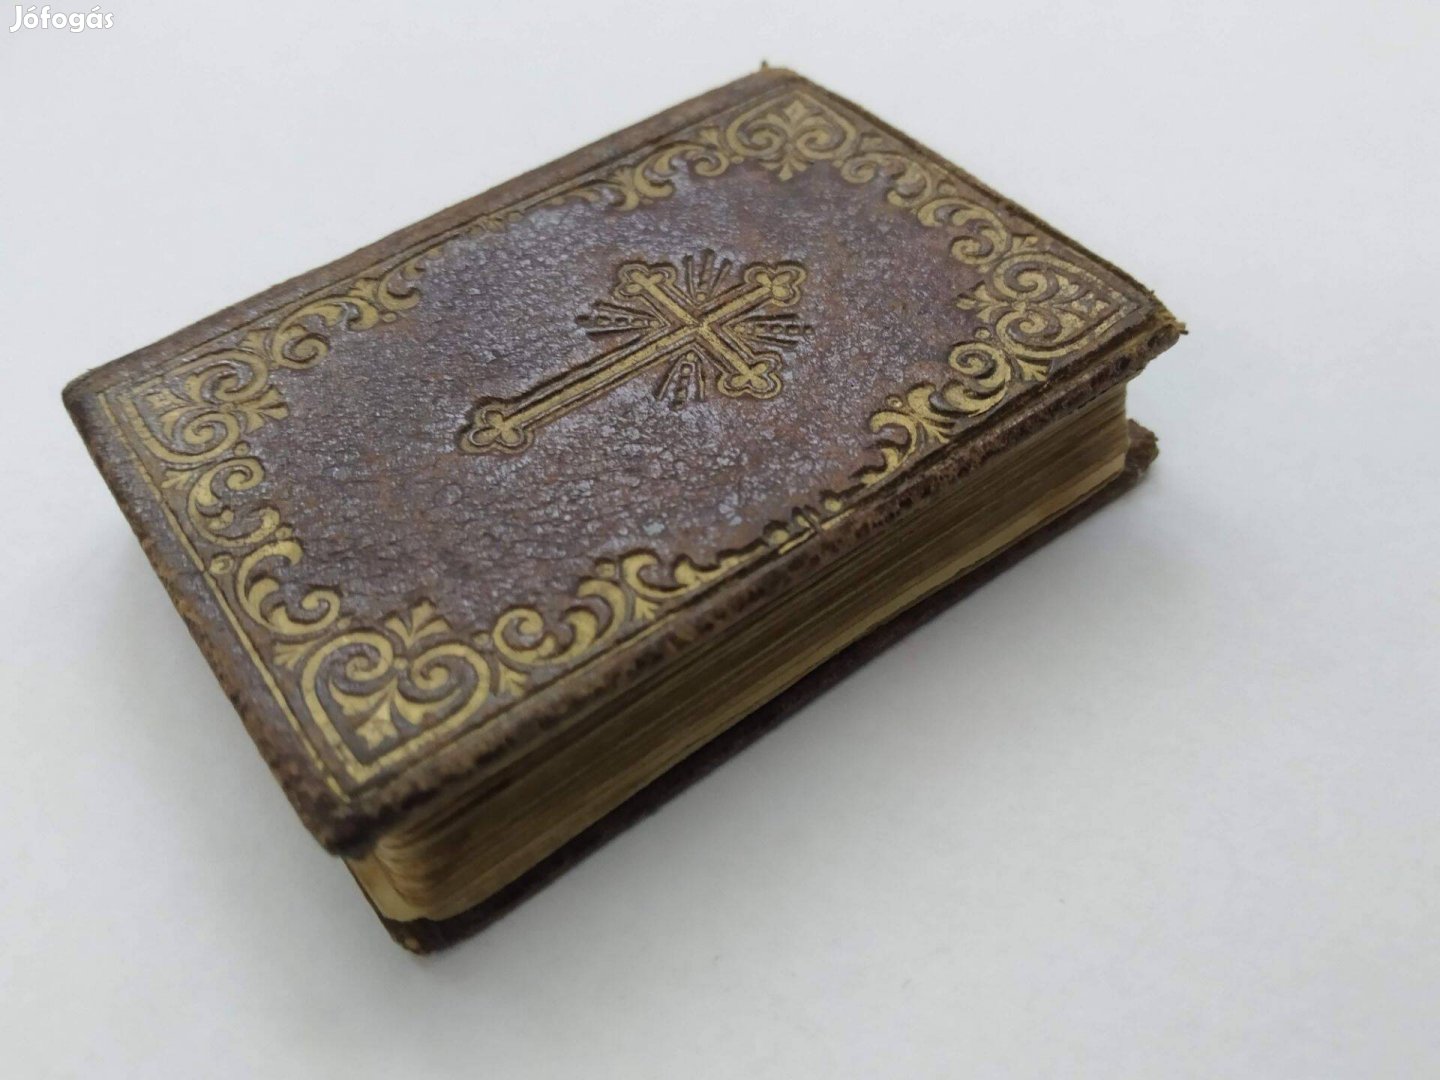 Igaz gyöngyök - Kath. Imakönyv Minikönyv 1891 antik könyv 6 cm x 5 cm